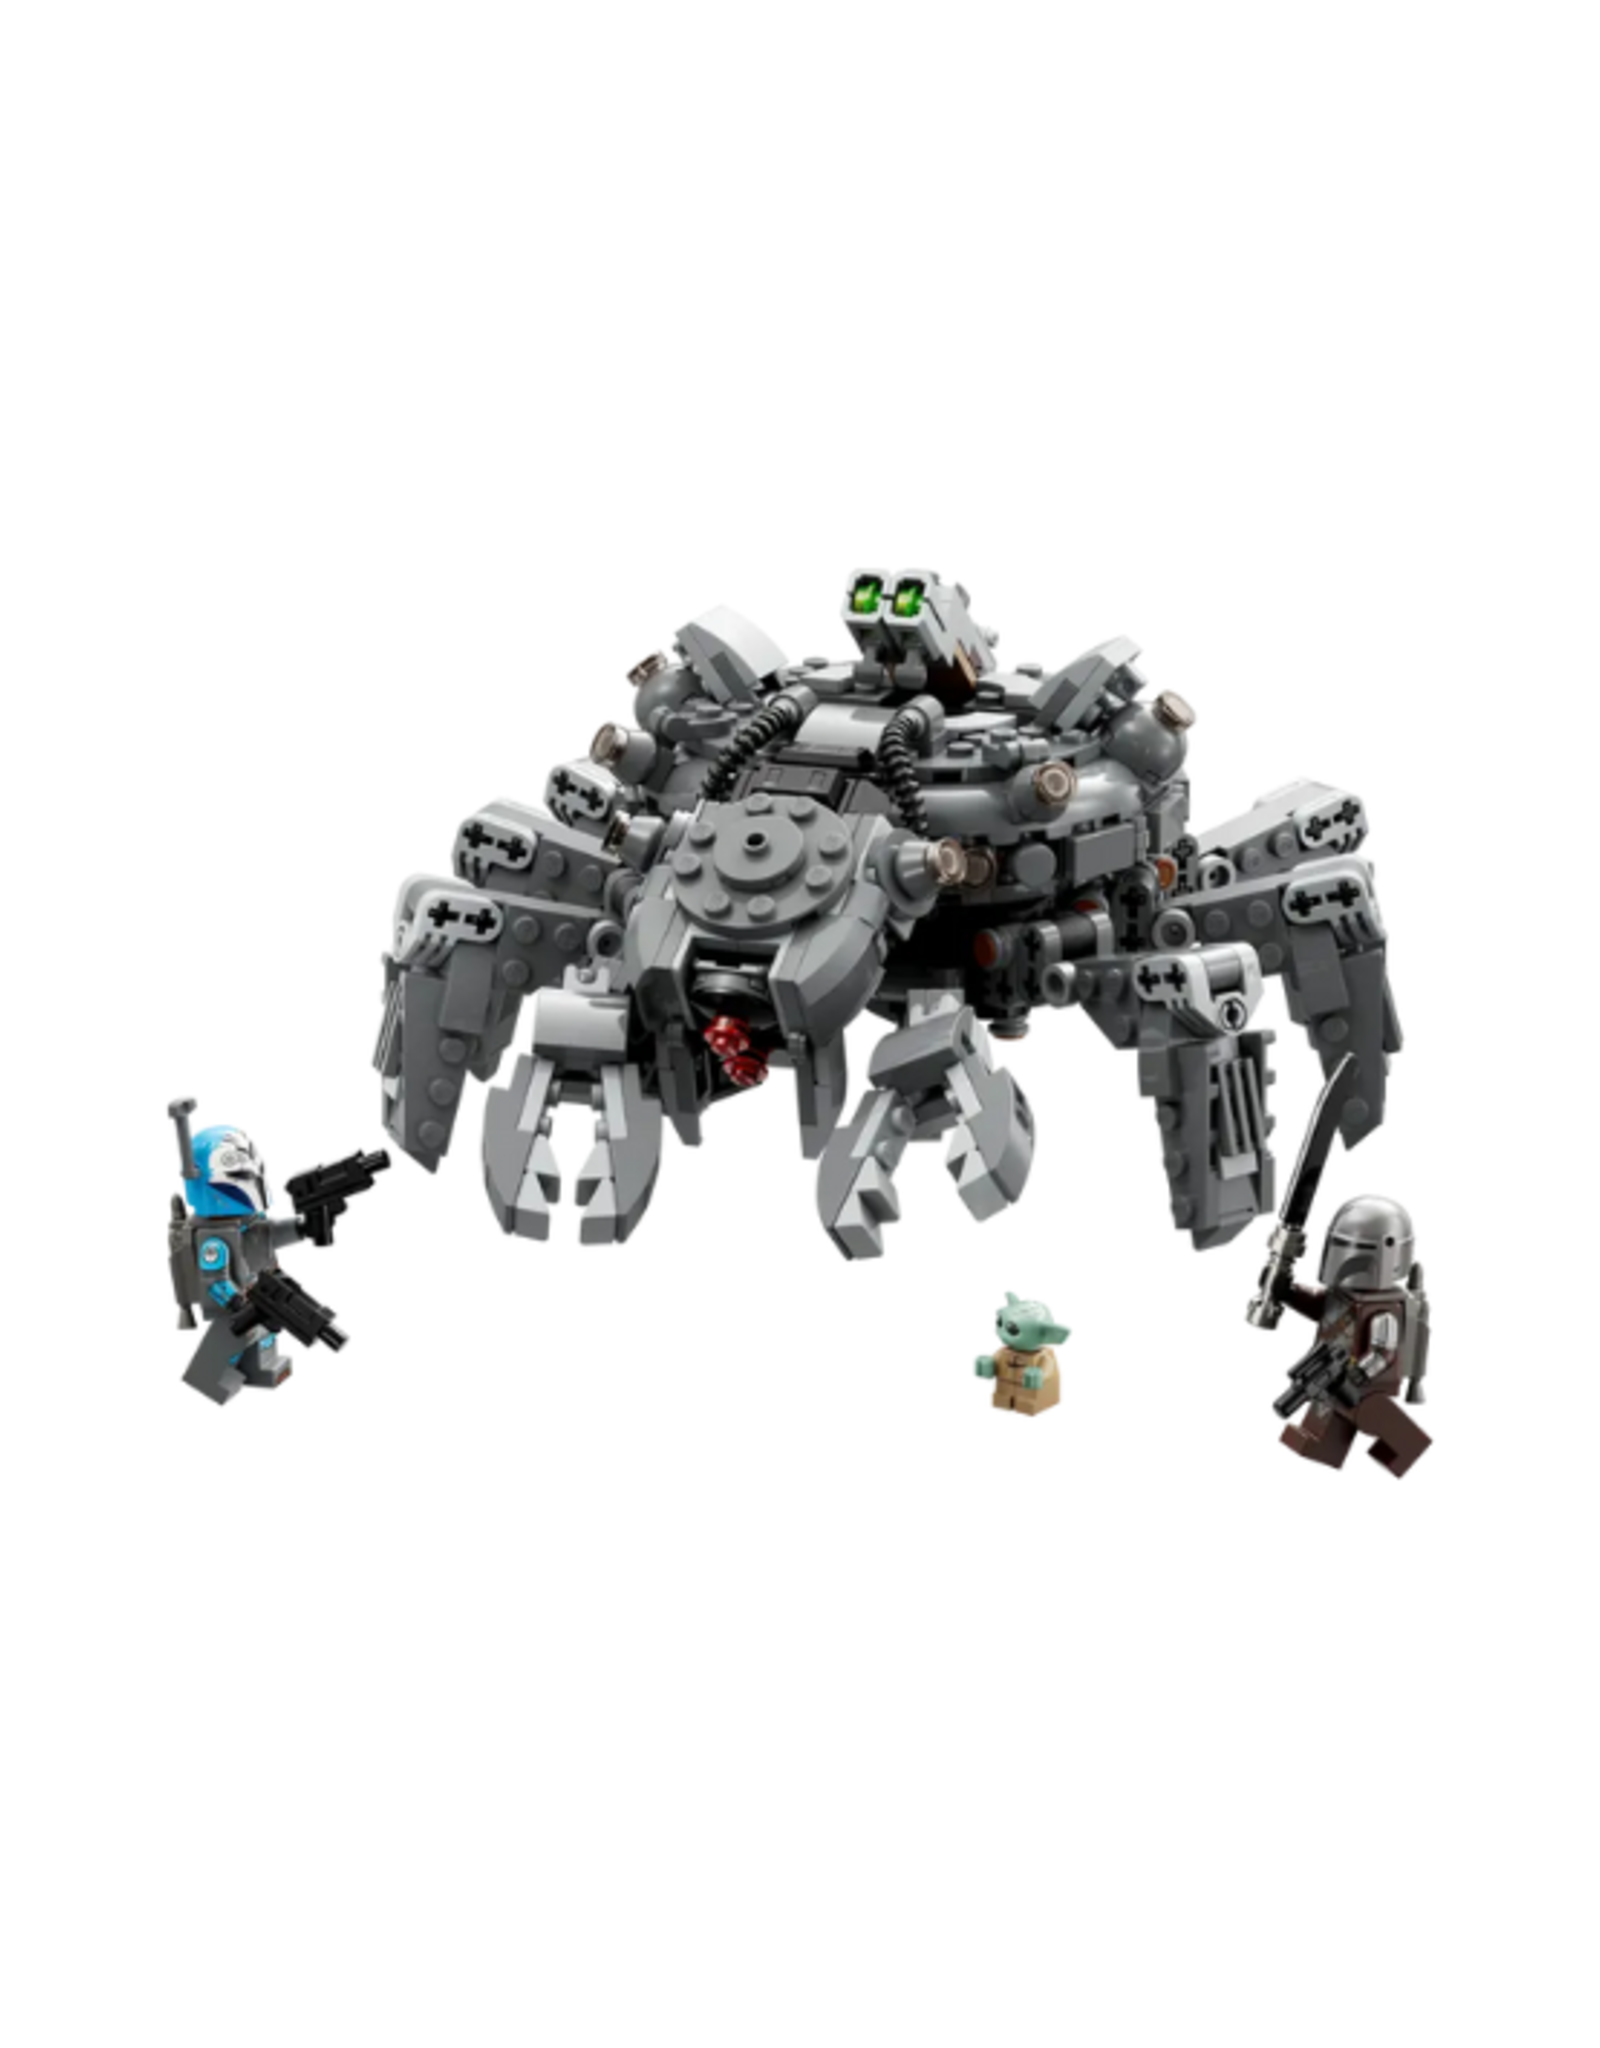 Lego Lego - Star Wars - 75361 - Spider Tank